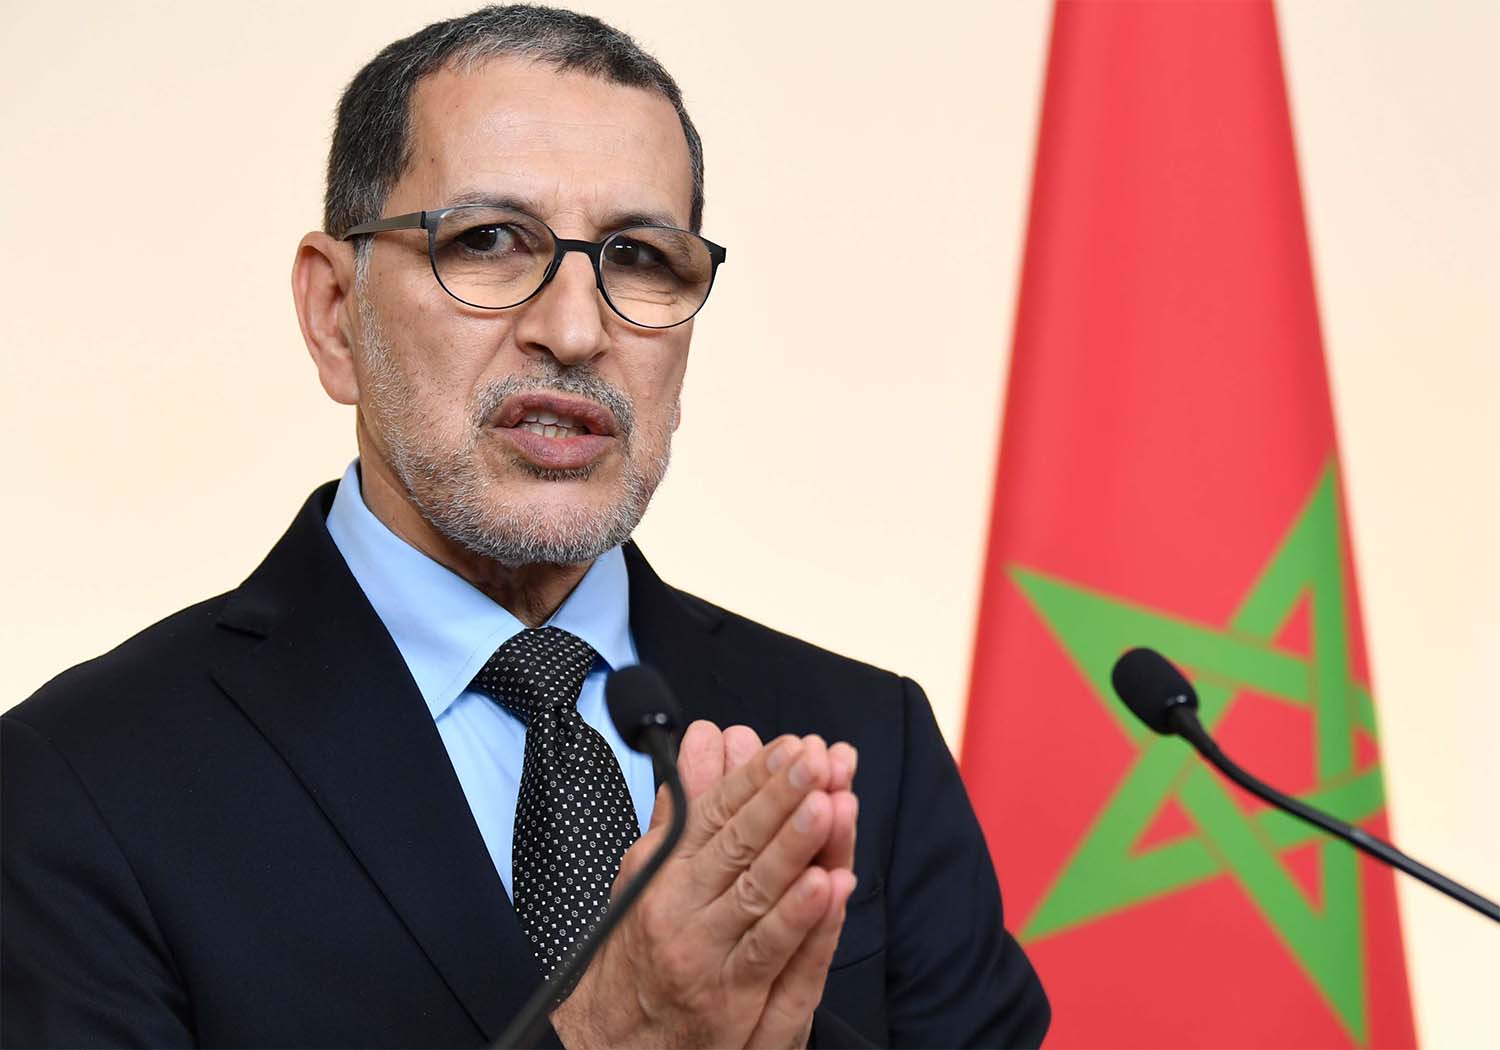 Moroccan Prime Minister Saad Dine El-Otmani